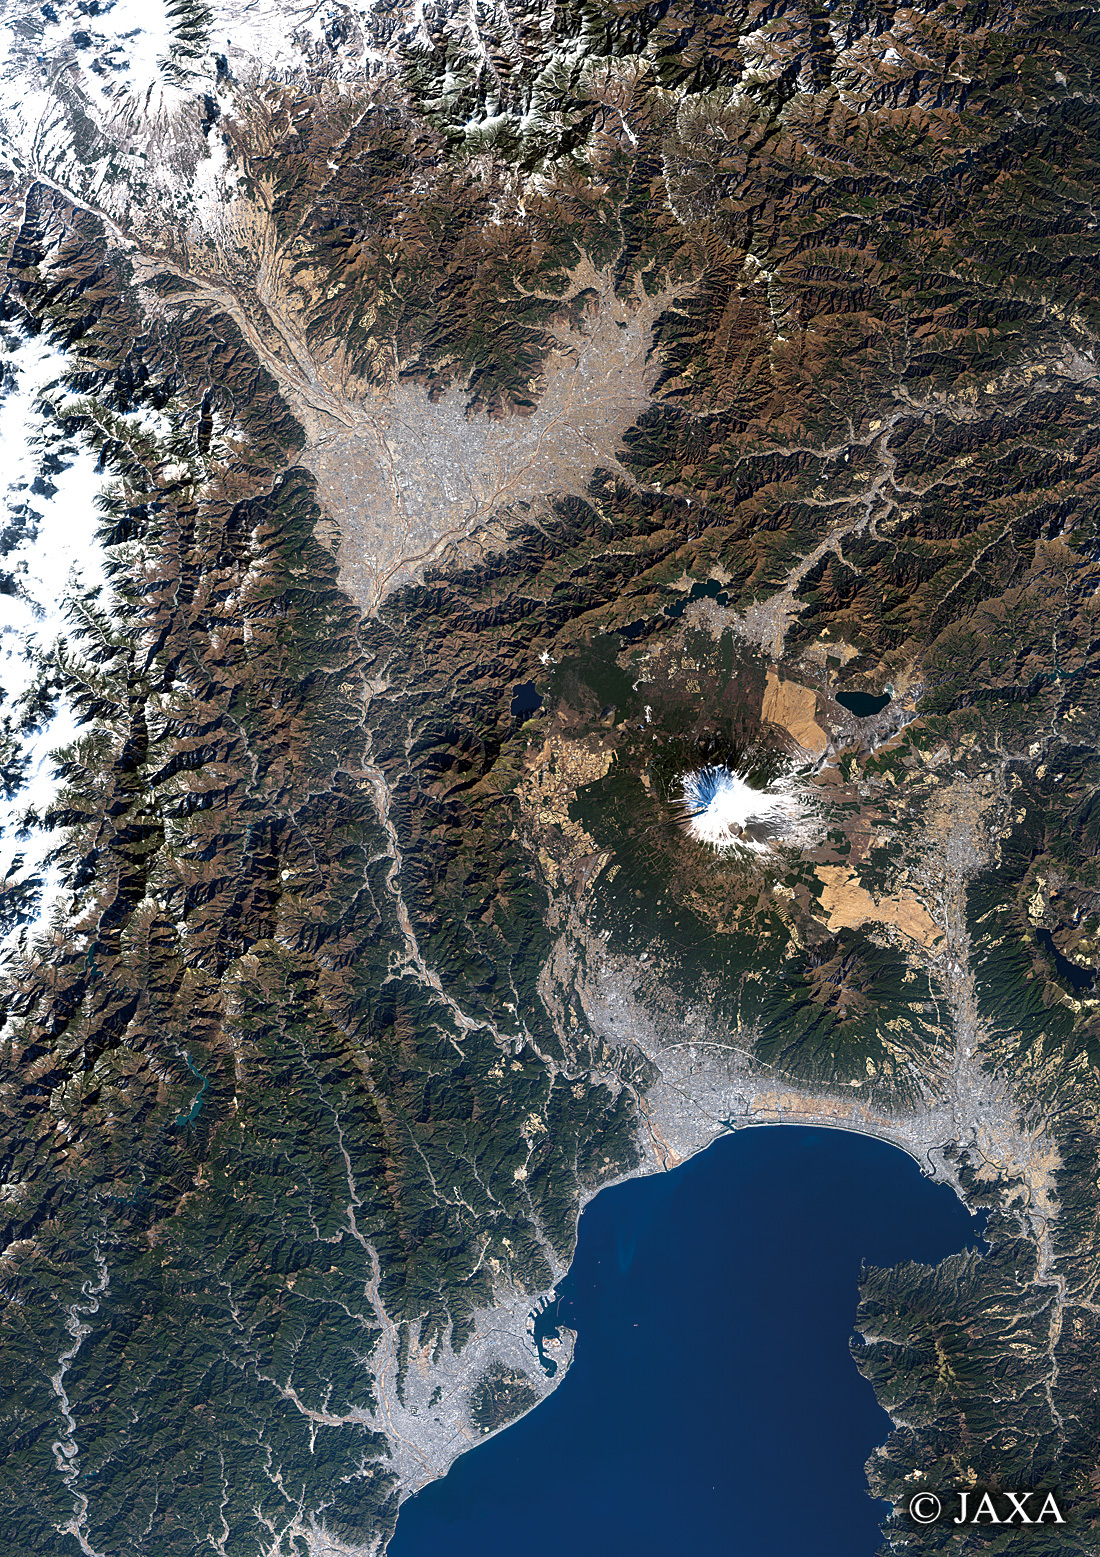 だいちから見た日本の都市 山梨県と周辺地域:衛星画像